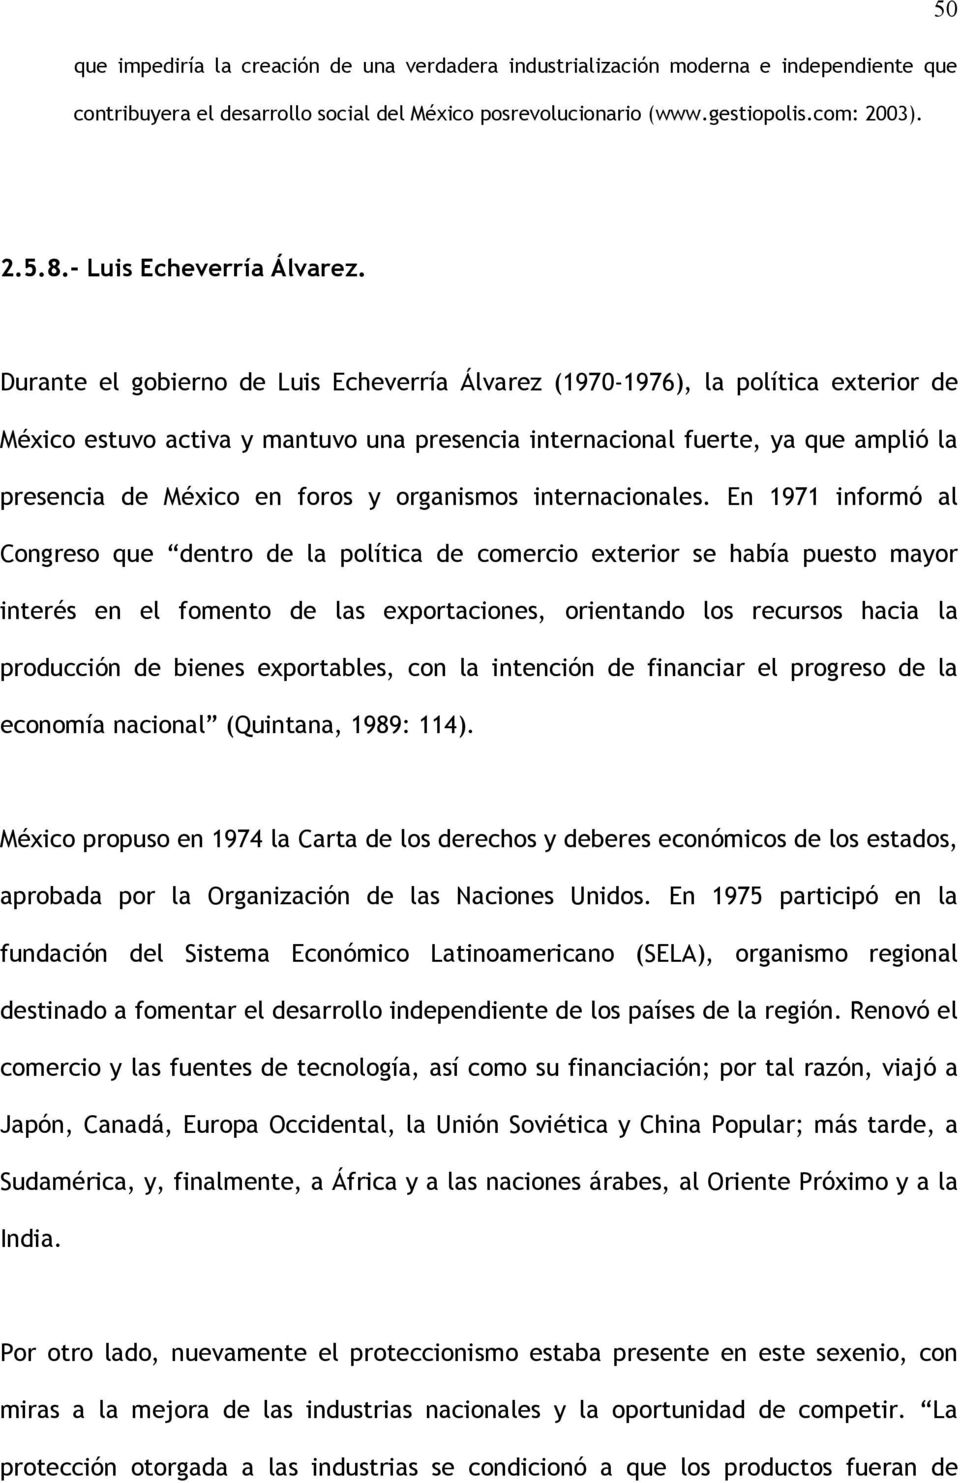 Durante el gobierno de Luis Echeverría Álvarez (1970-1976), la política exterior de México estuvo activa y mantuvo una presencia internacional fuerte, ya que amplió la presencia de México en foros y